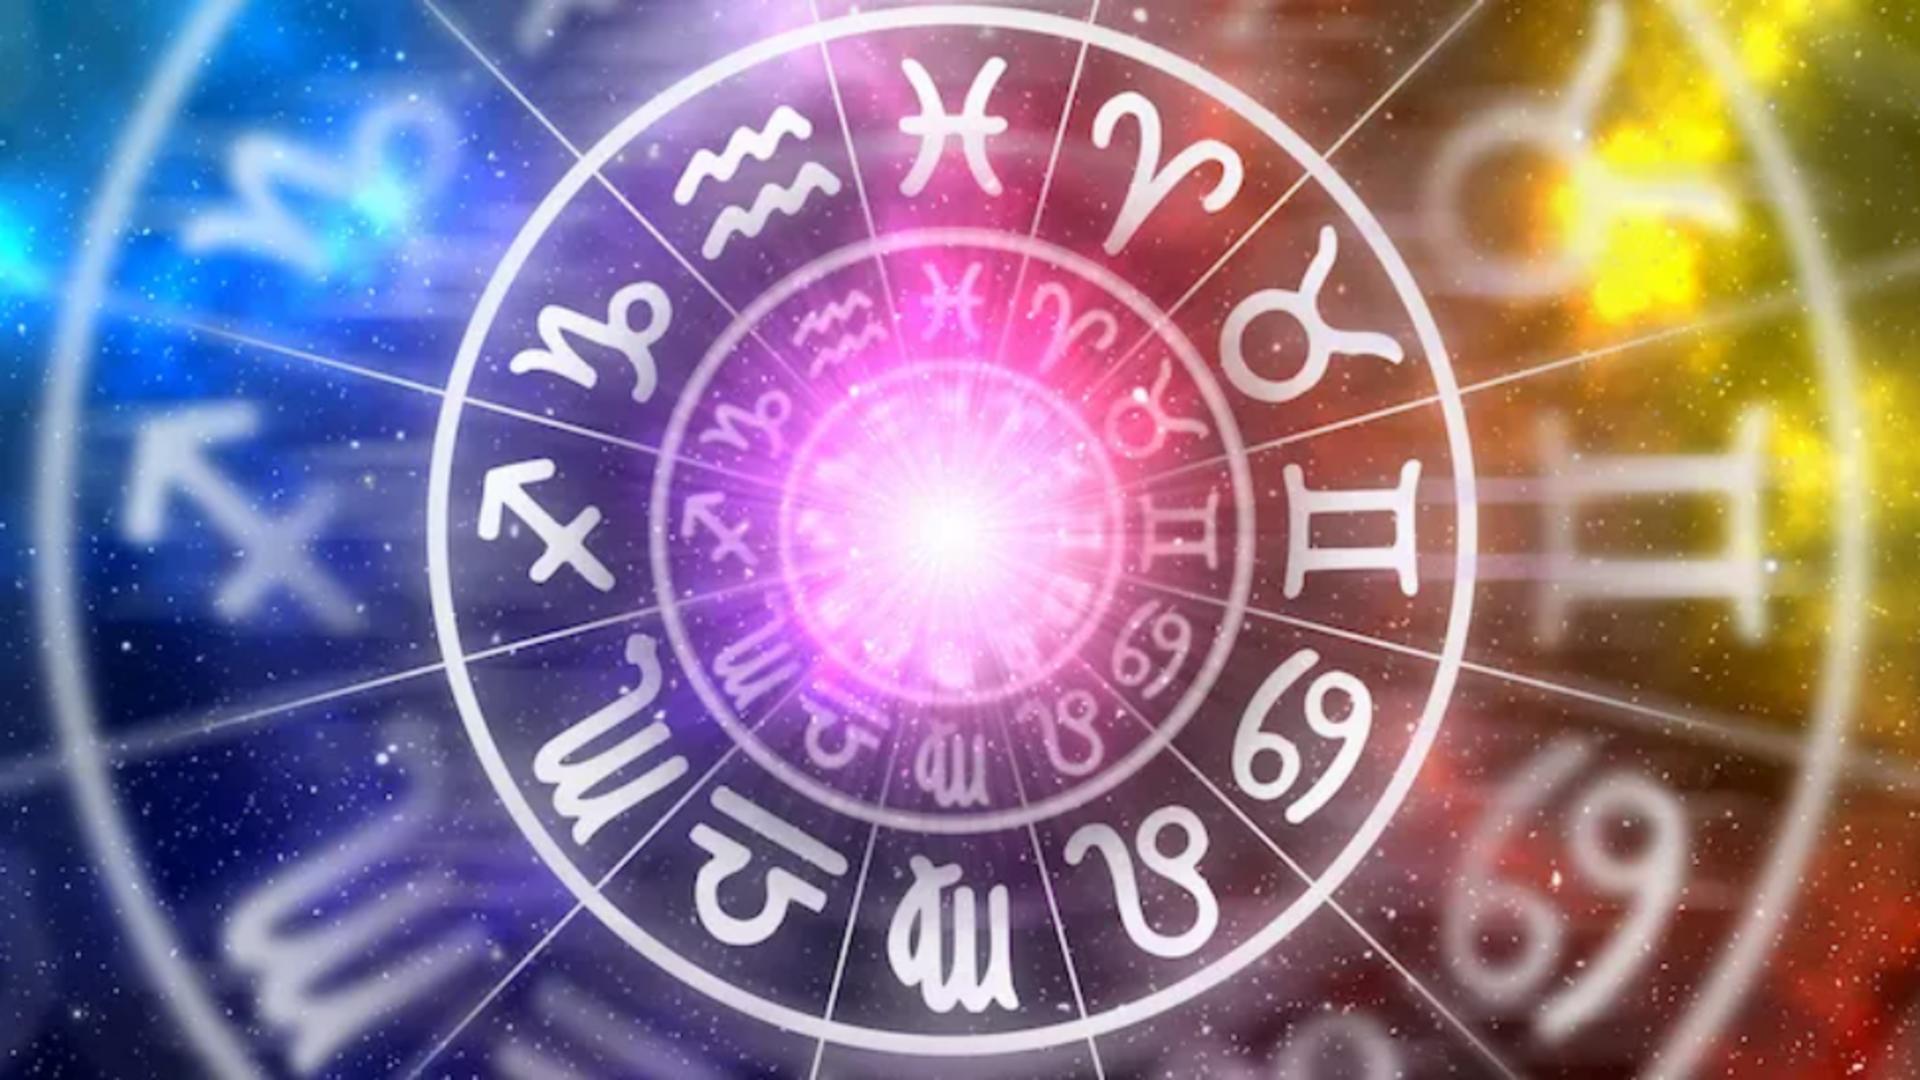 Horoscopul săptămânii 5 – 11 februarie. Mercur intră în Vărsător și aduce idei inovatoare. Patru zodii vor face schimbări radicale în viața lor